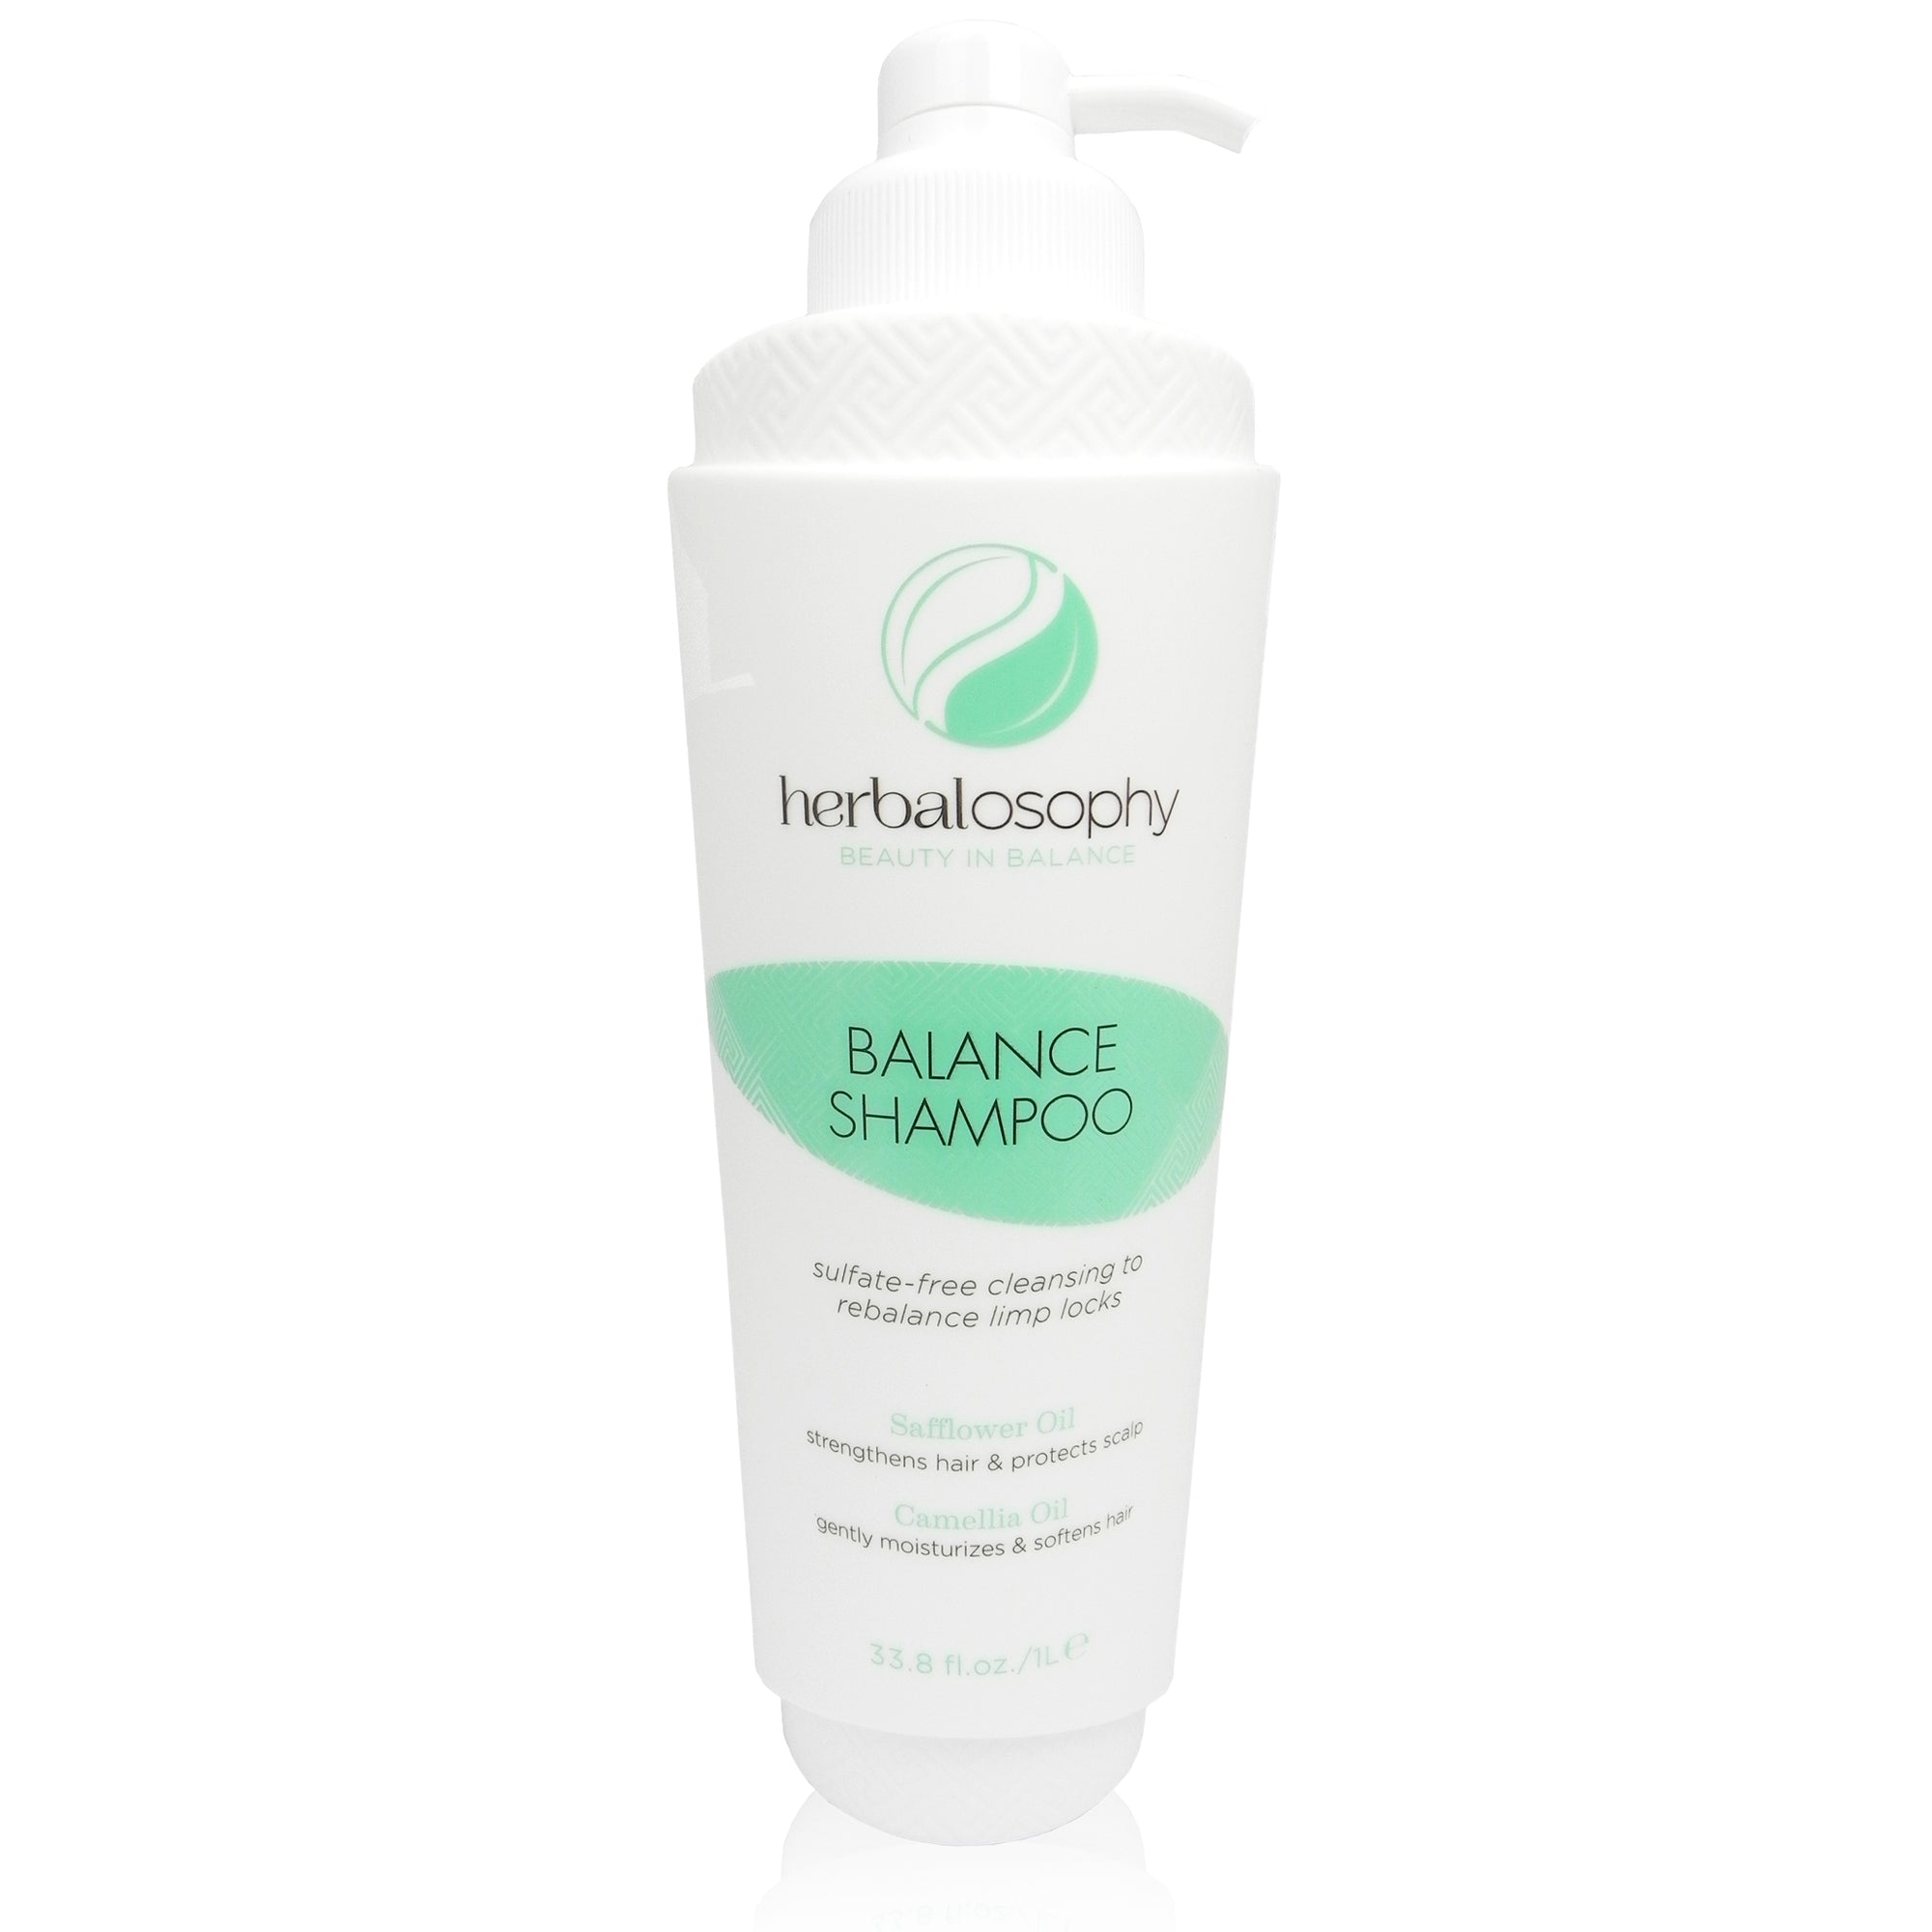 Herbalosophy Balance Shampoo 33.8oz bottle front